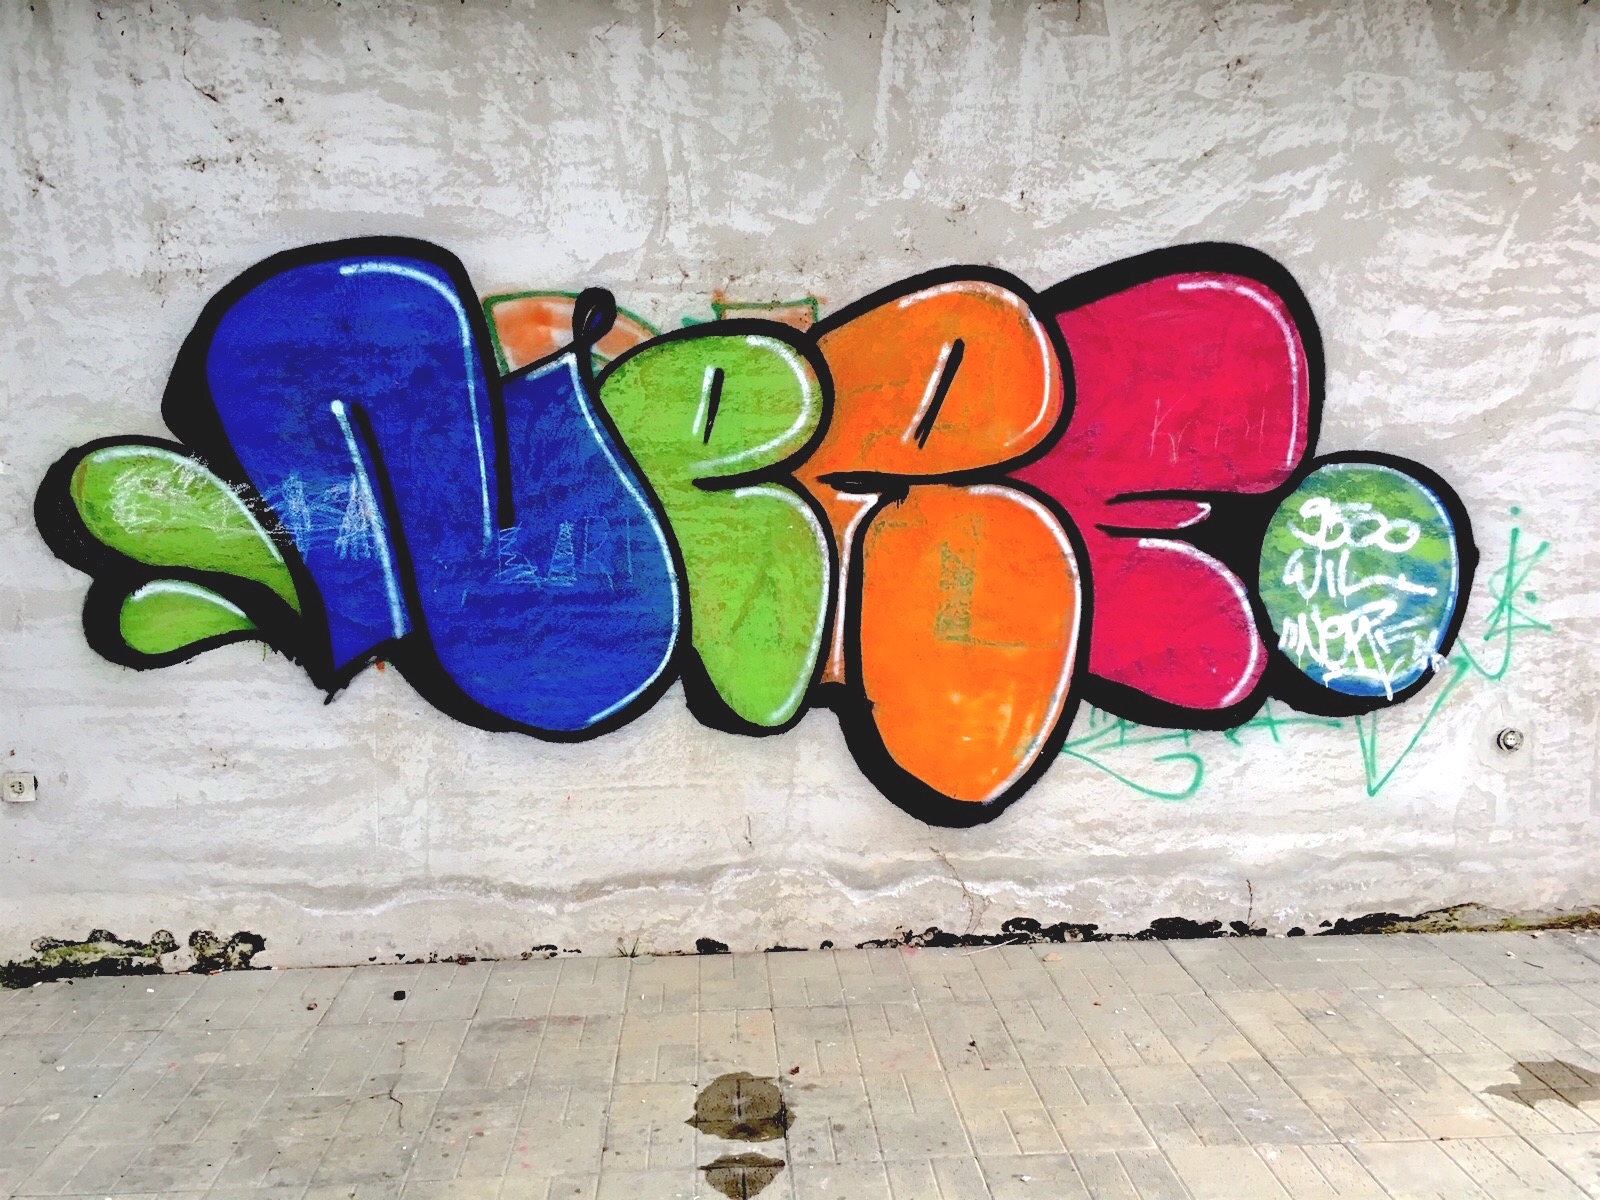 Bearbeitet<br>Graffiti; NERF